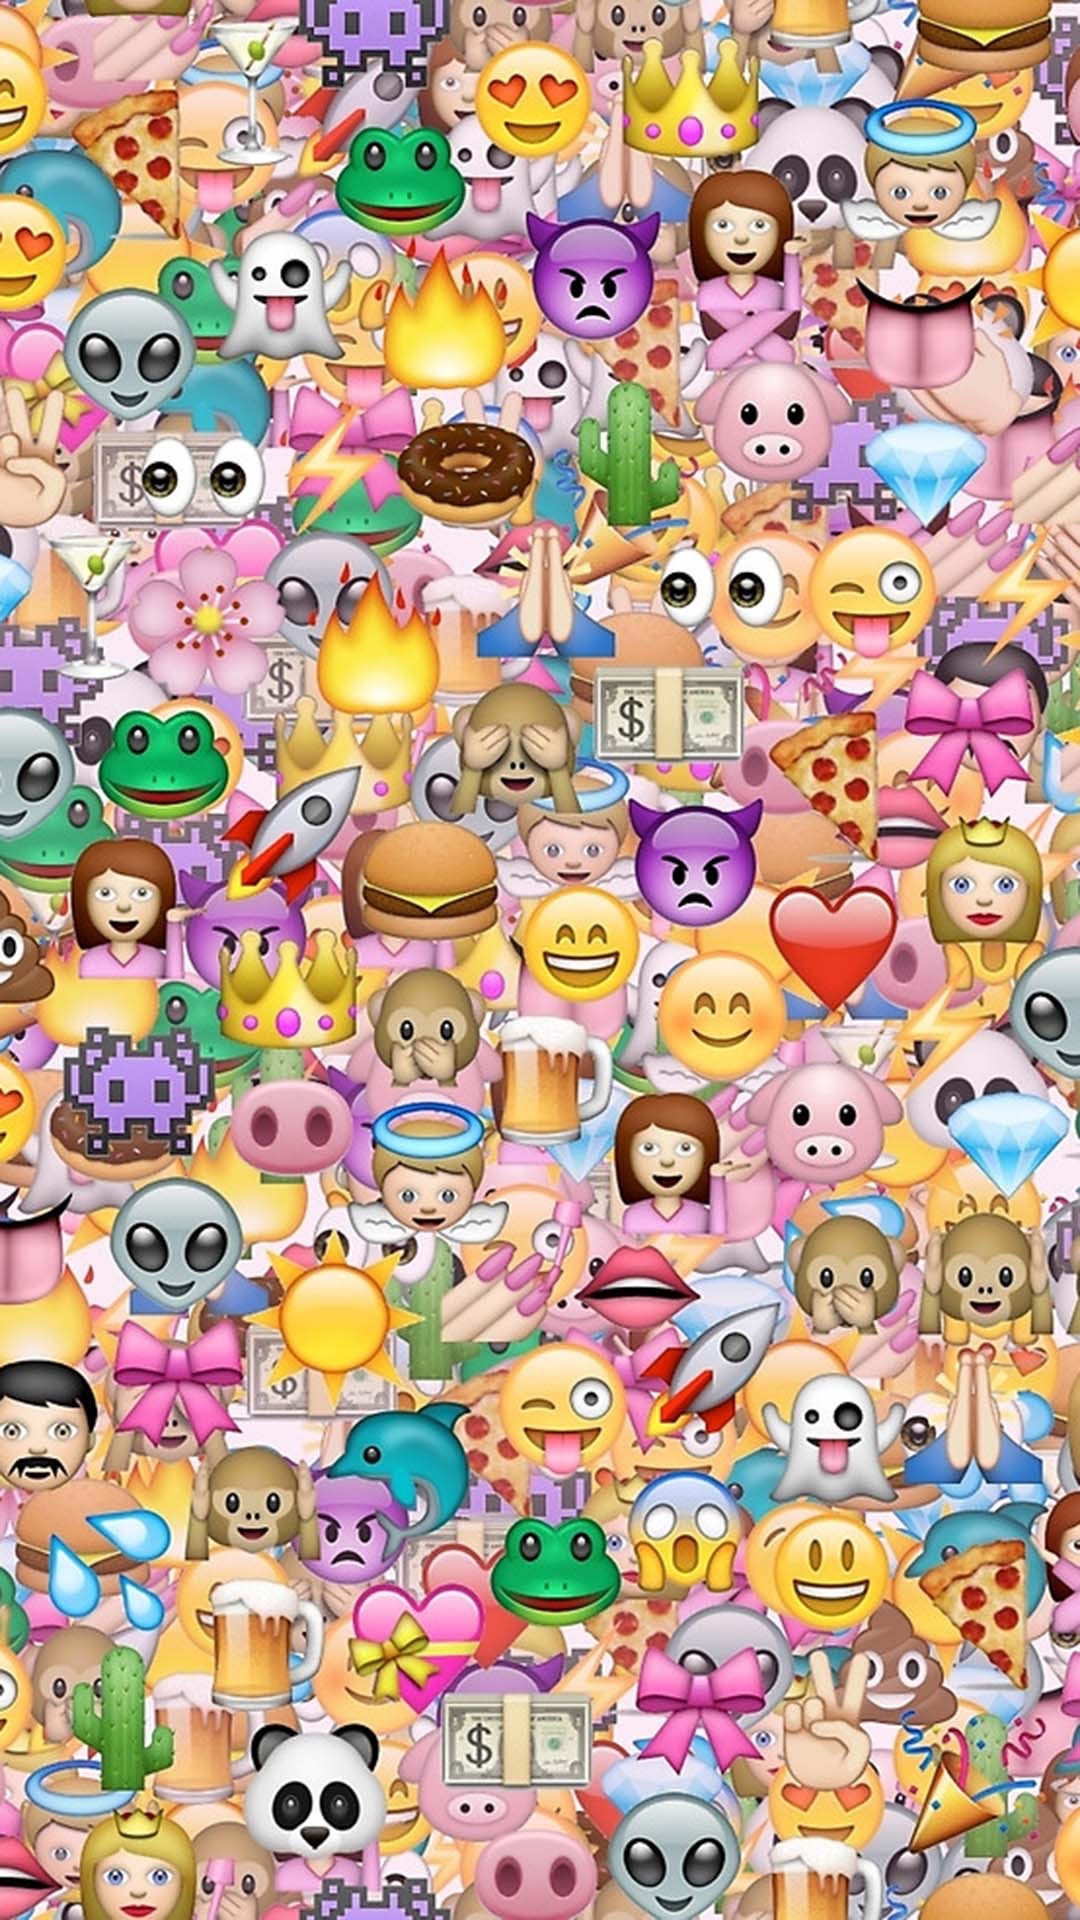 emoji wallpaper,pattern,design,emoticon,smiley,icon